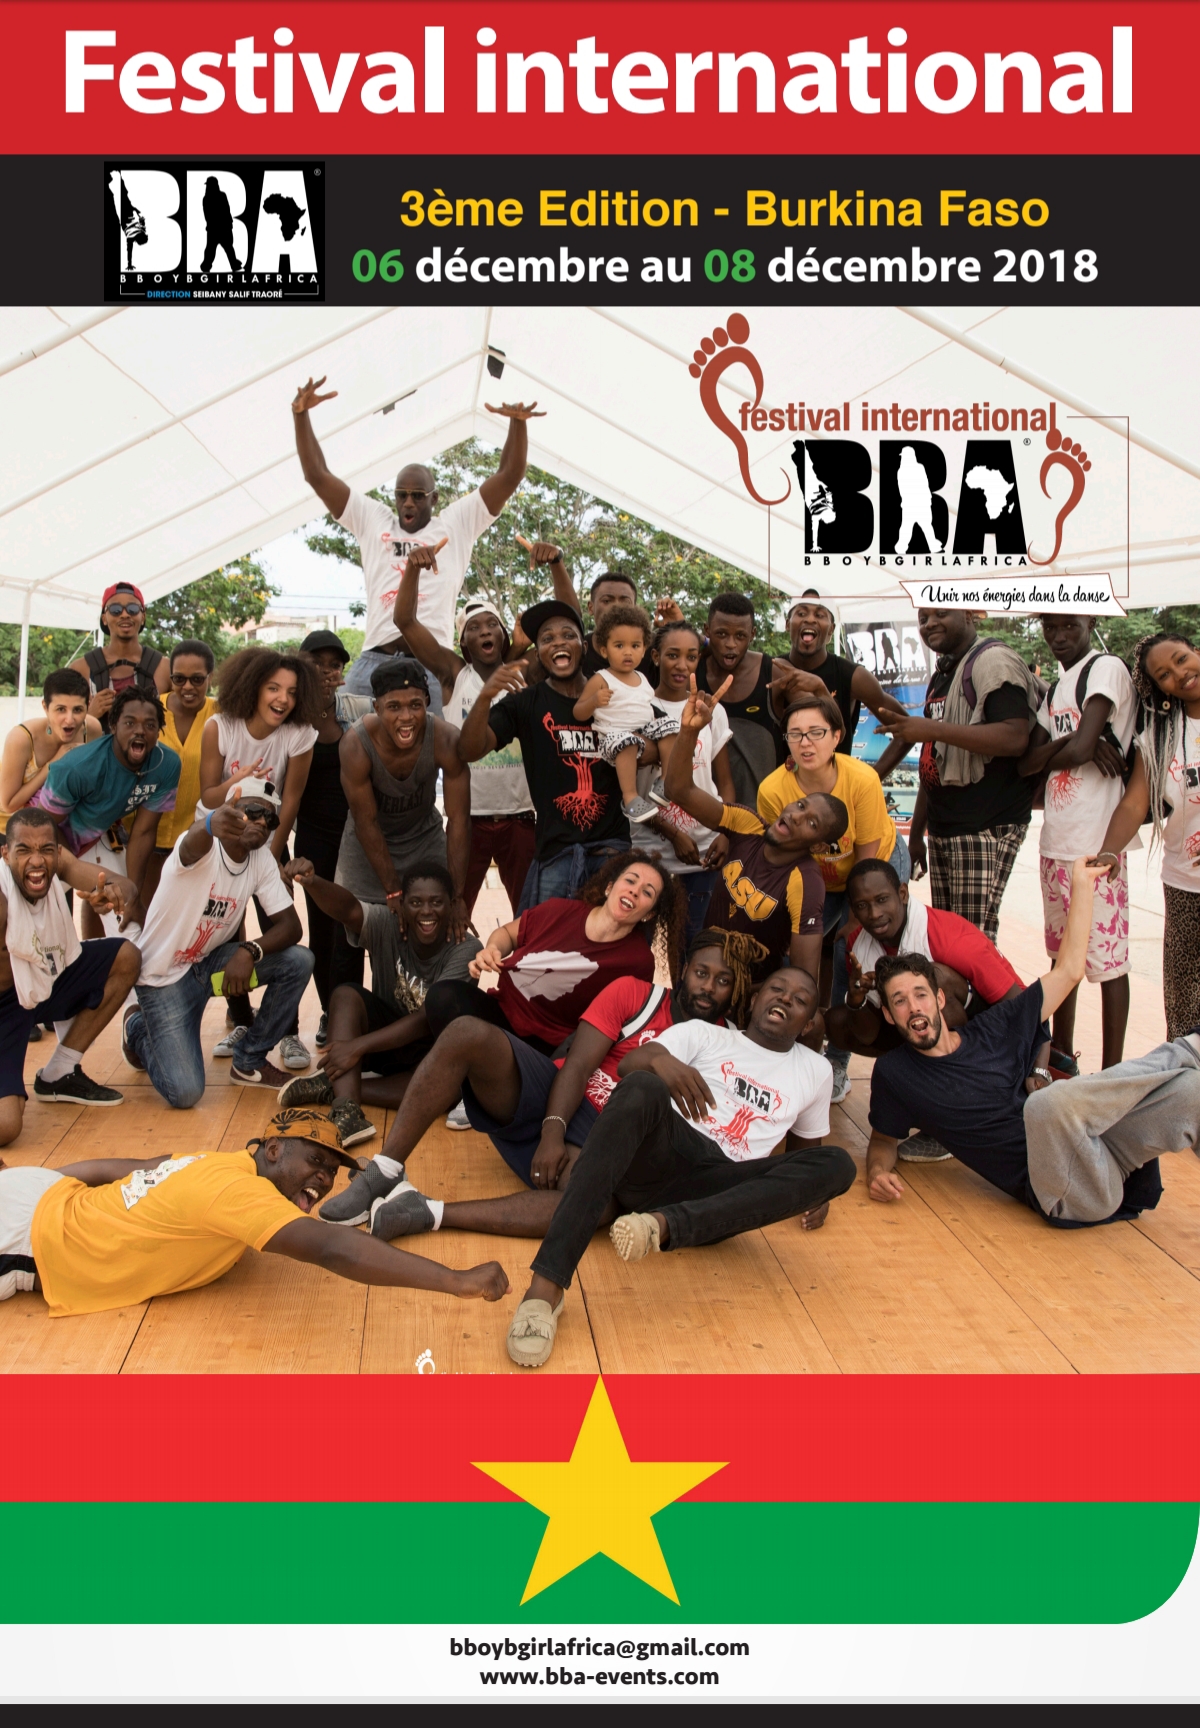  FIBB 2018 : Le 1er Festival Africain de danse en Afrique.